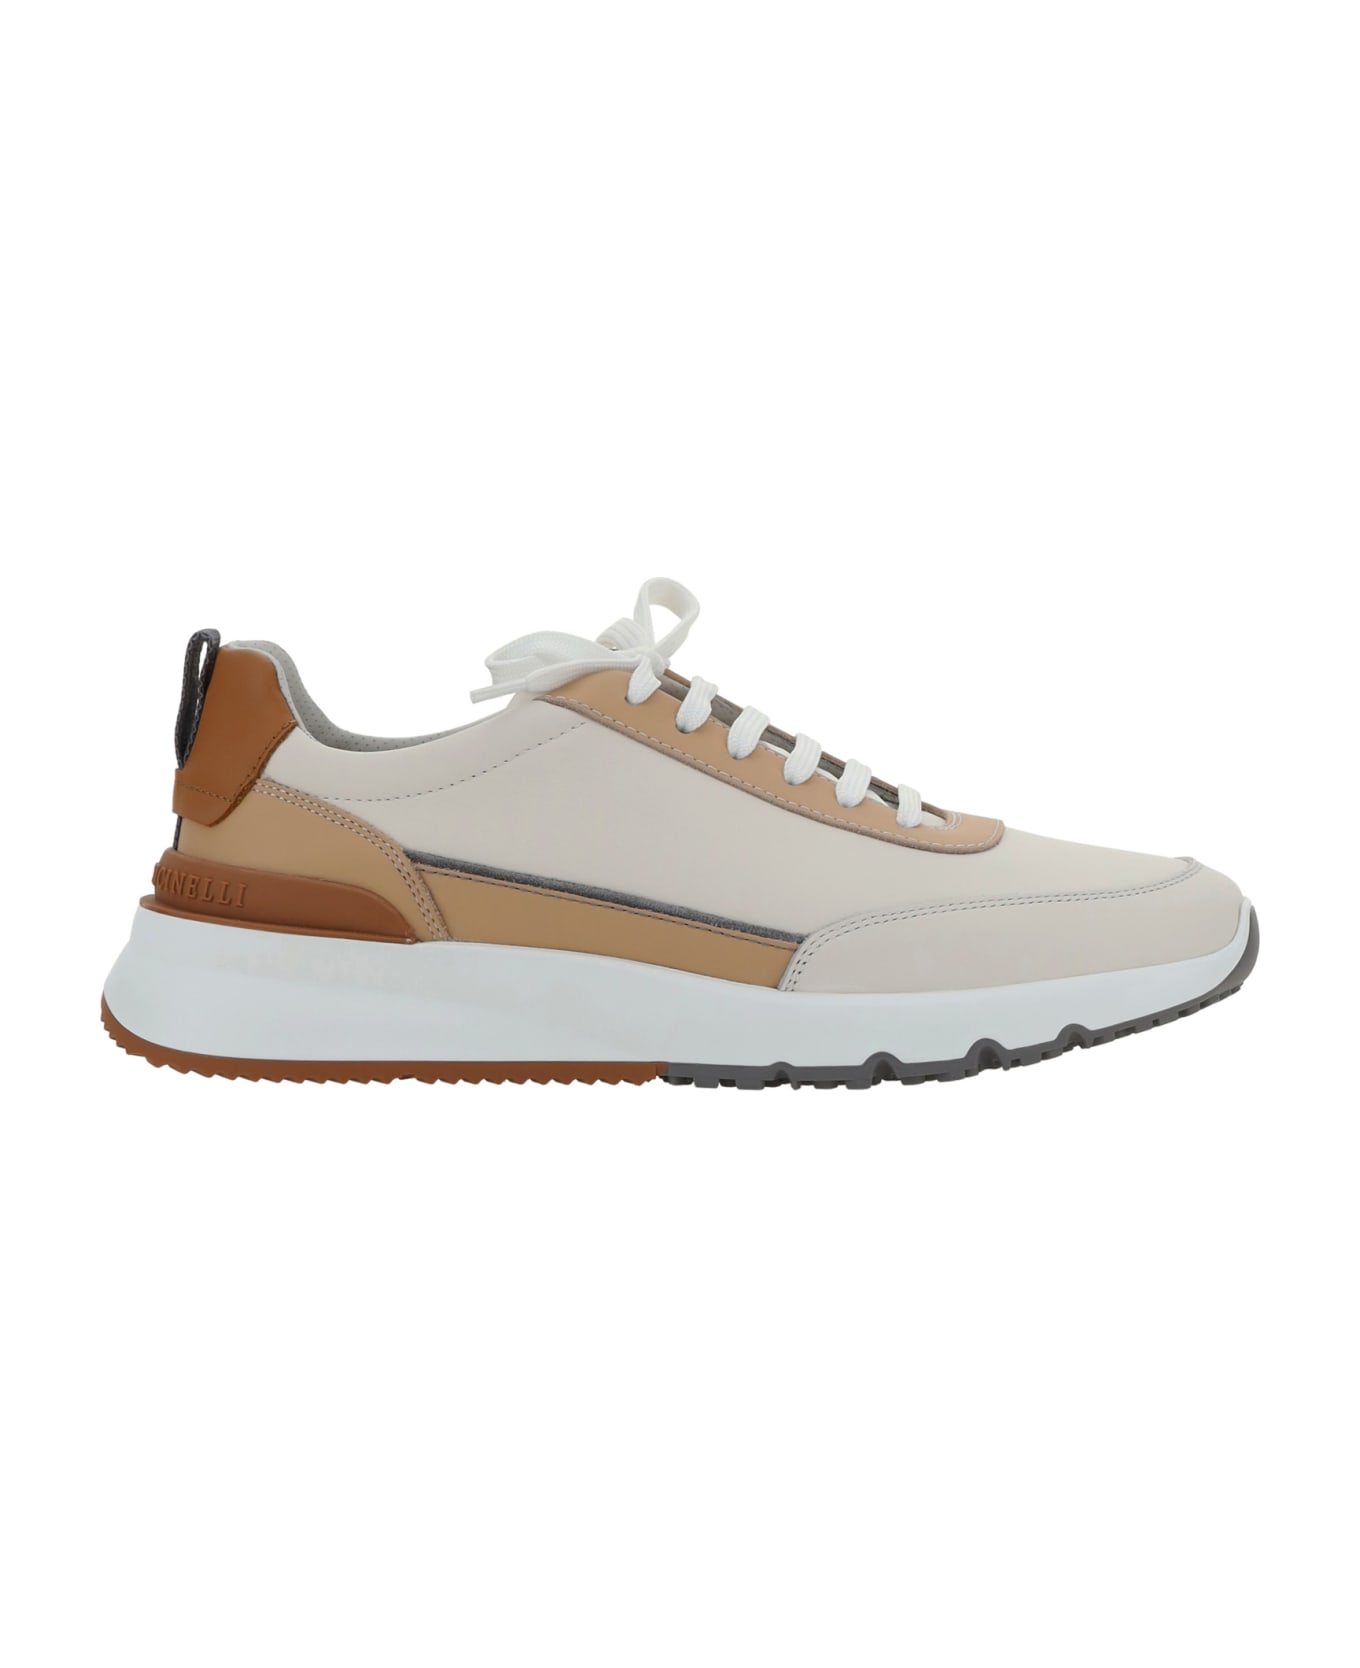 Brunello Cucinelli Runner White Sneakers - Latte+sabbia+cuoio+fumo